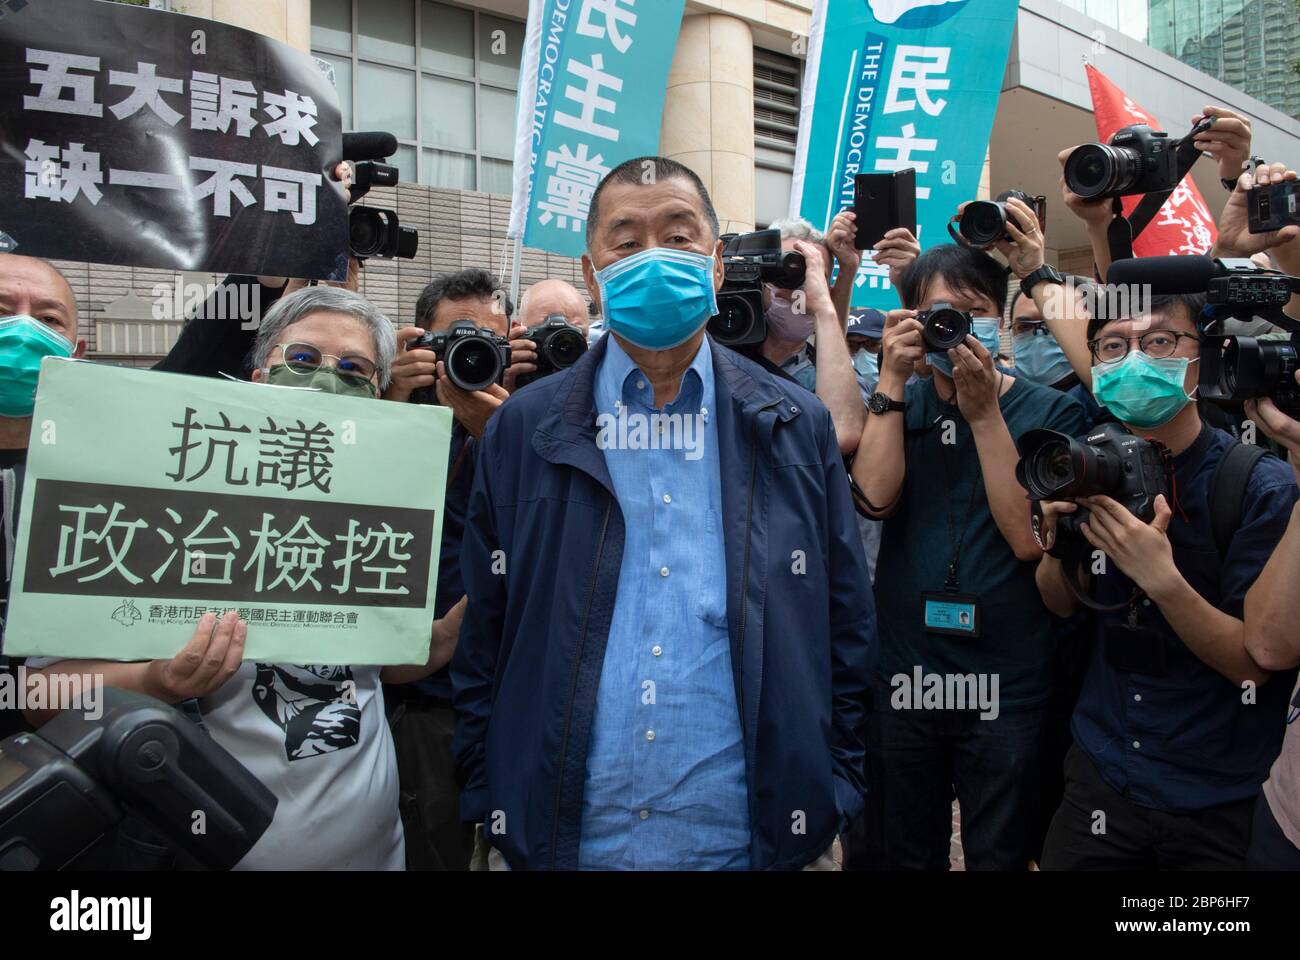 HONG KONG, HONG KONG RAE, CHINA: 18 DE MAYO DE 2020. La Democracia 15 aparece en el Tribunal de magistrados de Kowloon Occidental después de sus recientes arrestos. El grupo incluye a algunos de los actores más importantes en la lucha por la democracia en Hong Kong. JIMMY LAI, propietario del periódico multimillonario, llega a la corte. El grupo incluye a Cyd Ho Sau-lan, Martin Lee, Yeung Sum, sin Chung-Kai, Albert Ho Chun-yan, Au NOK-Hin, Richard Tsoi, Jimmy Lai, Lee Cheuk-Yan, Leung Yiu-Chung, Leung Kwok-Hung, Figo Chan, Avery ng, Raphael Wong.Alne Jaynows Live News/Russell Foto de stock